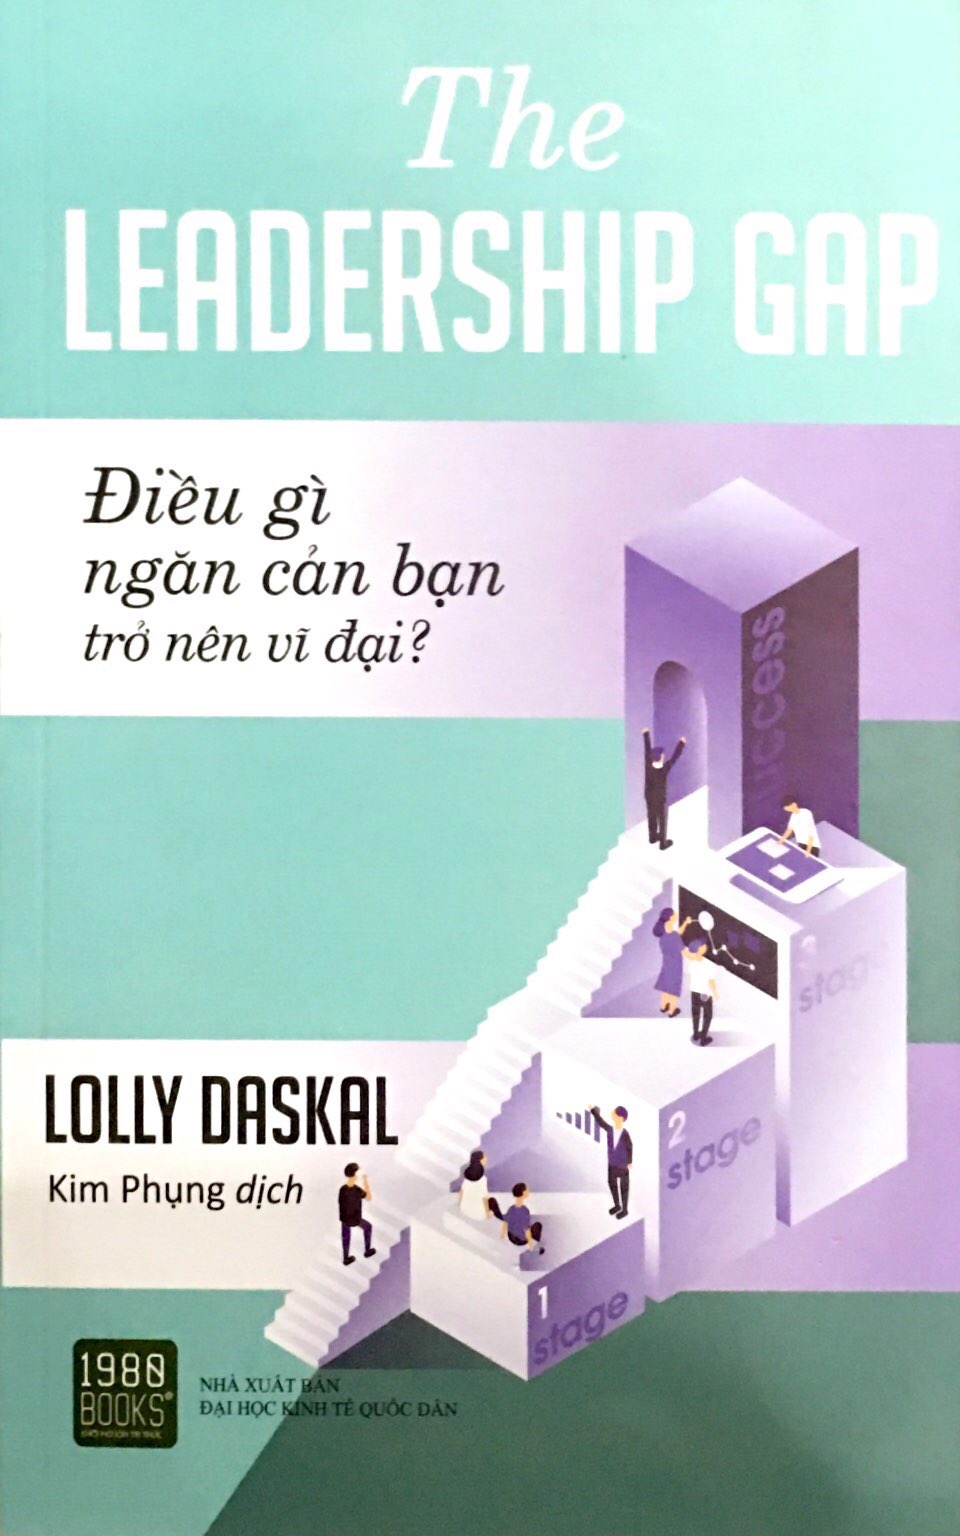 The Leadership Gap PDF